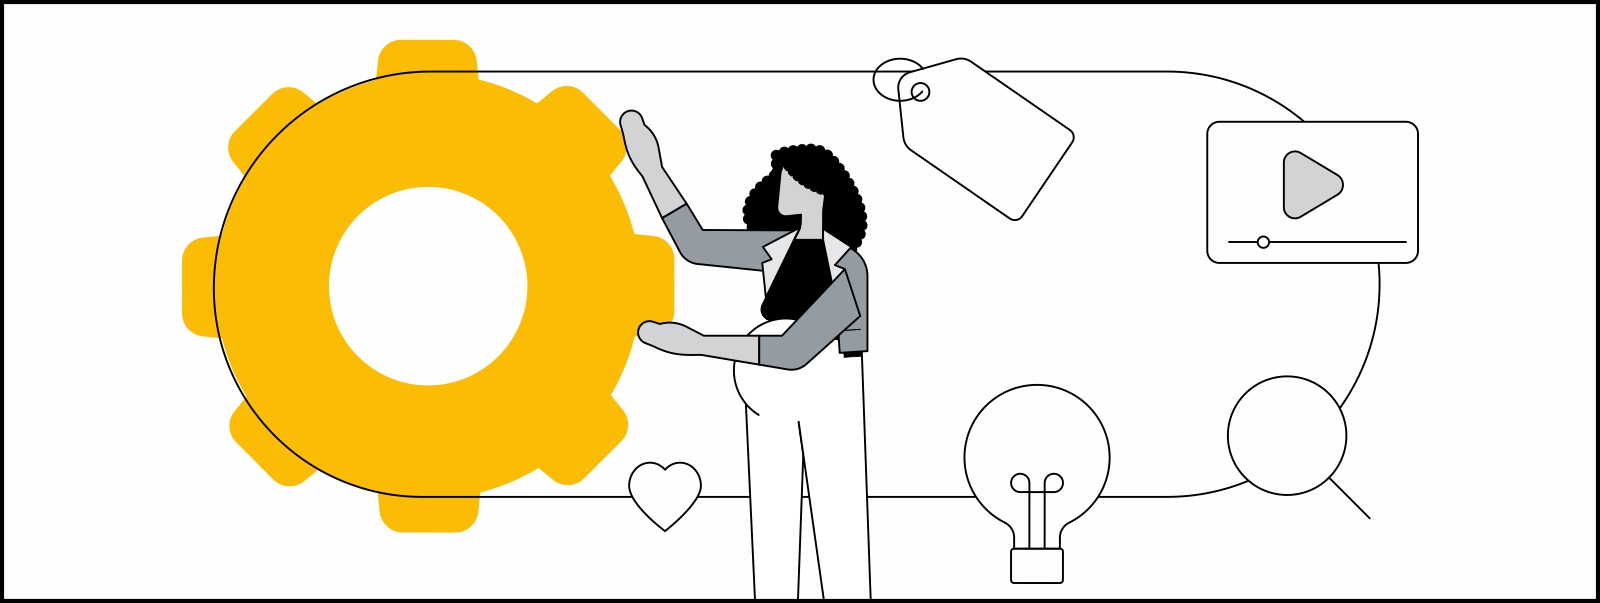 una mujer embarazada hace girar un engranaje por el que circulan cinco íconos: una etiqueta, un video de YouTube, una lupa, una bombilla de luz y un corazón.